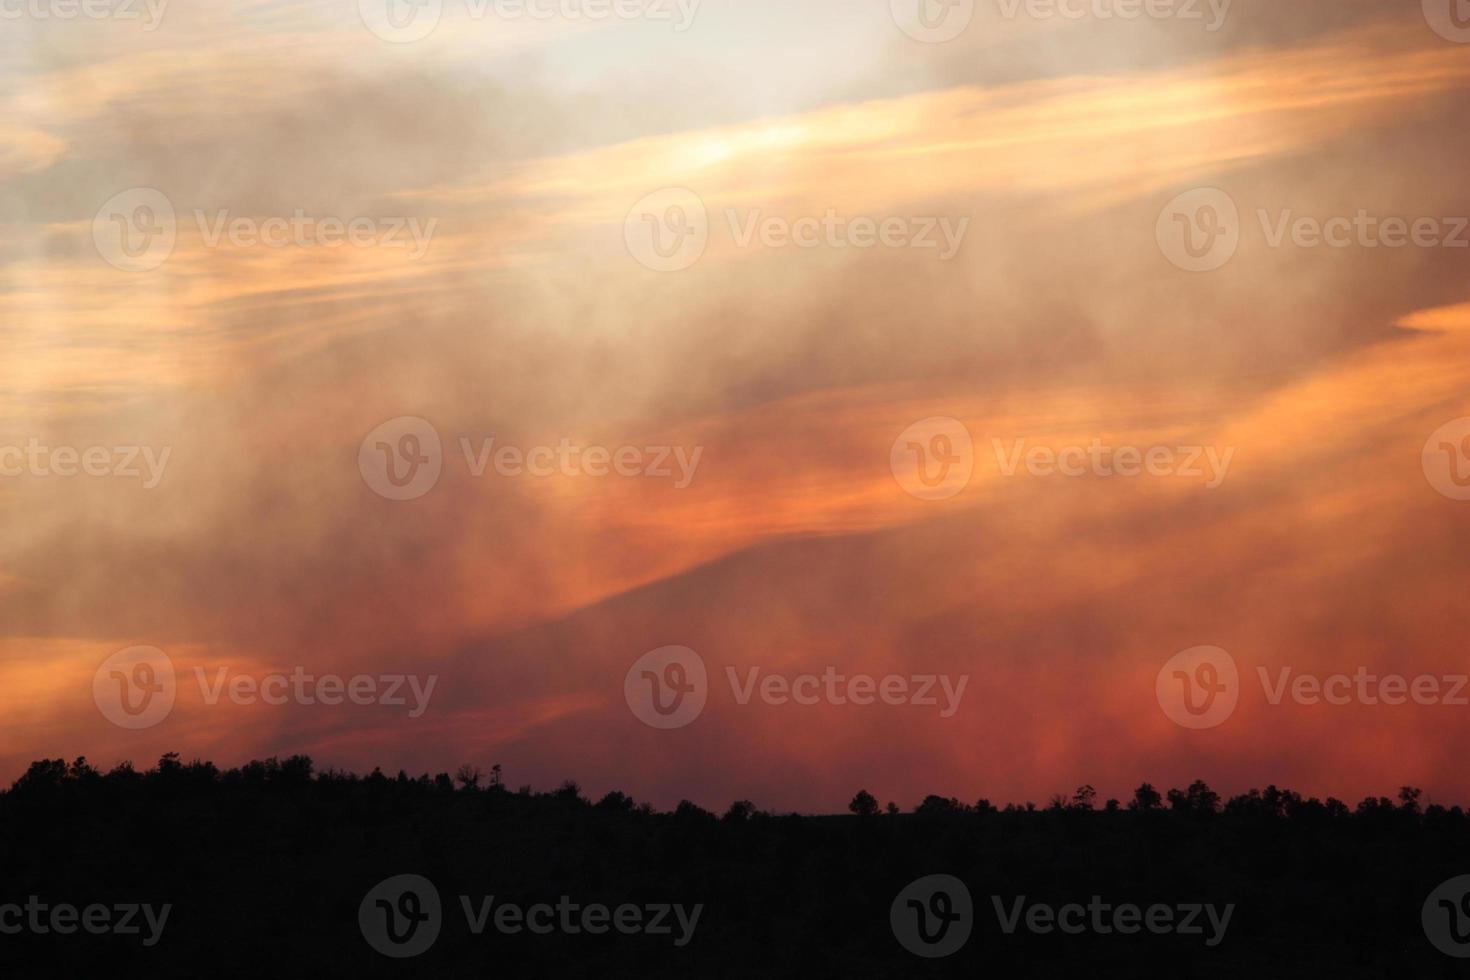 doorschijnende lagen rook en wolken in de lucht bij zonsondergang tijdens een bosbrand foto